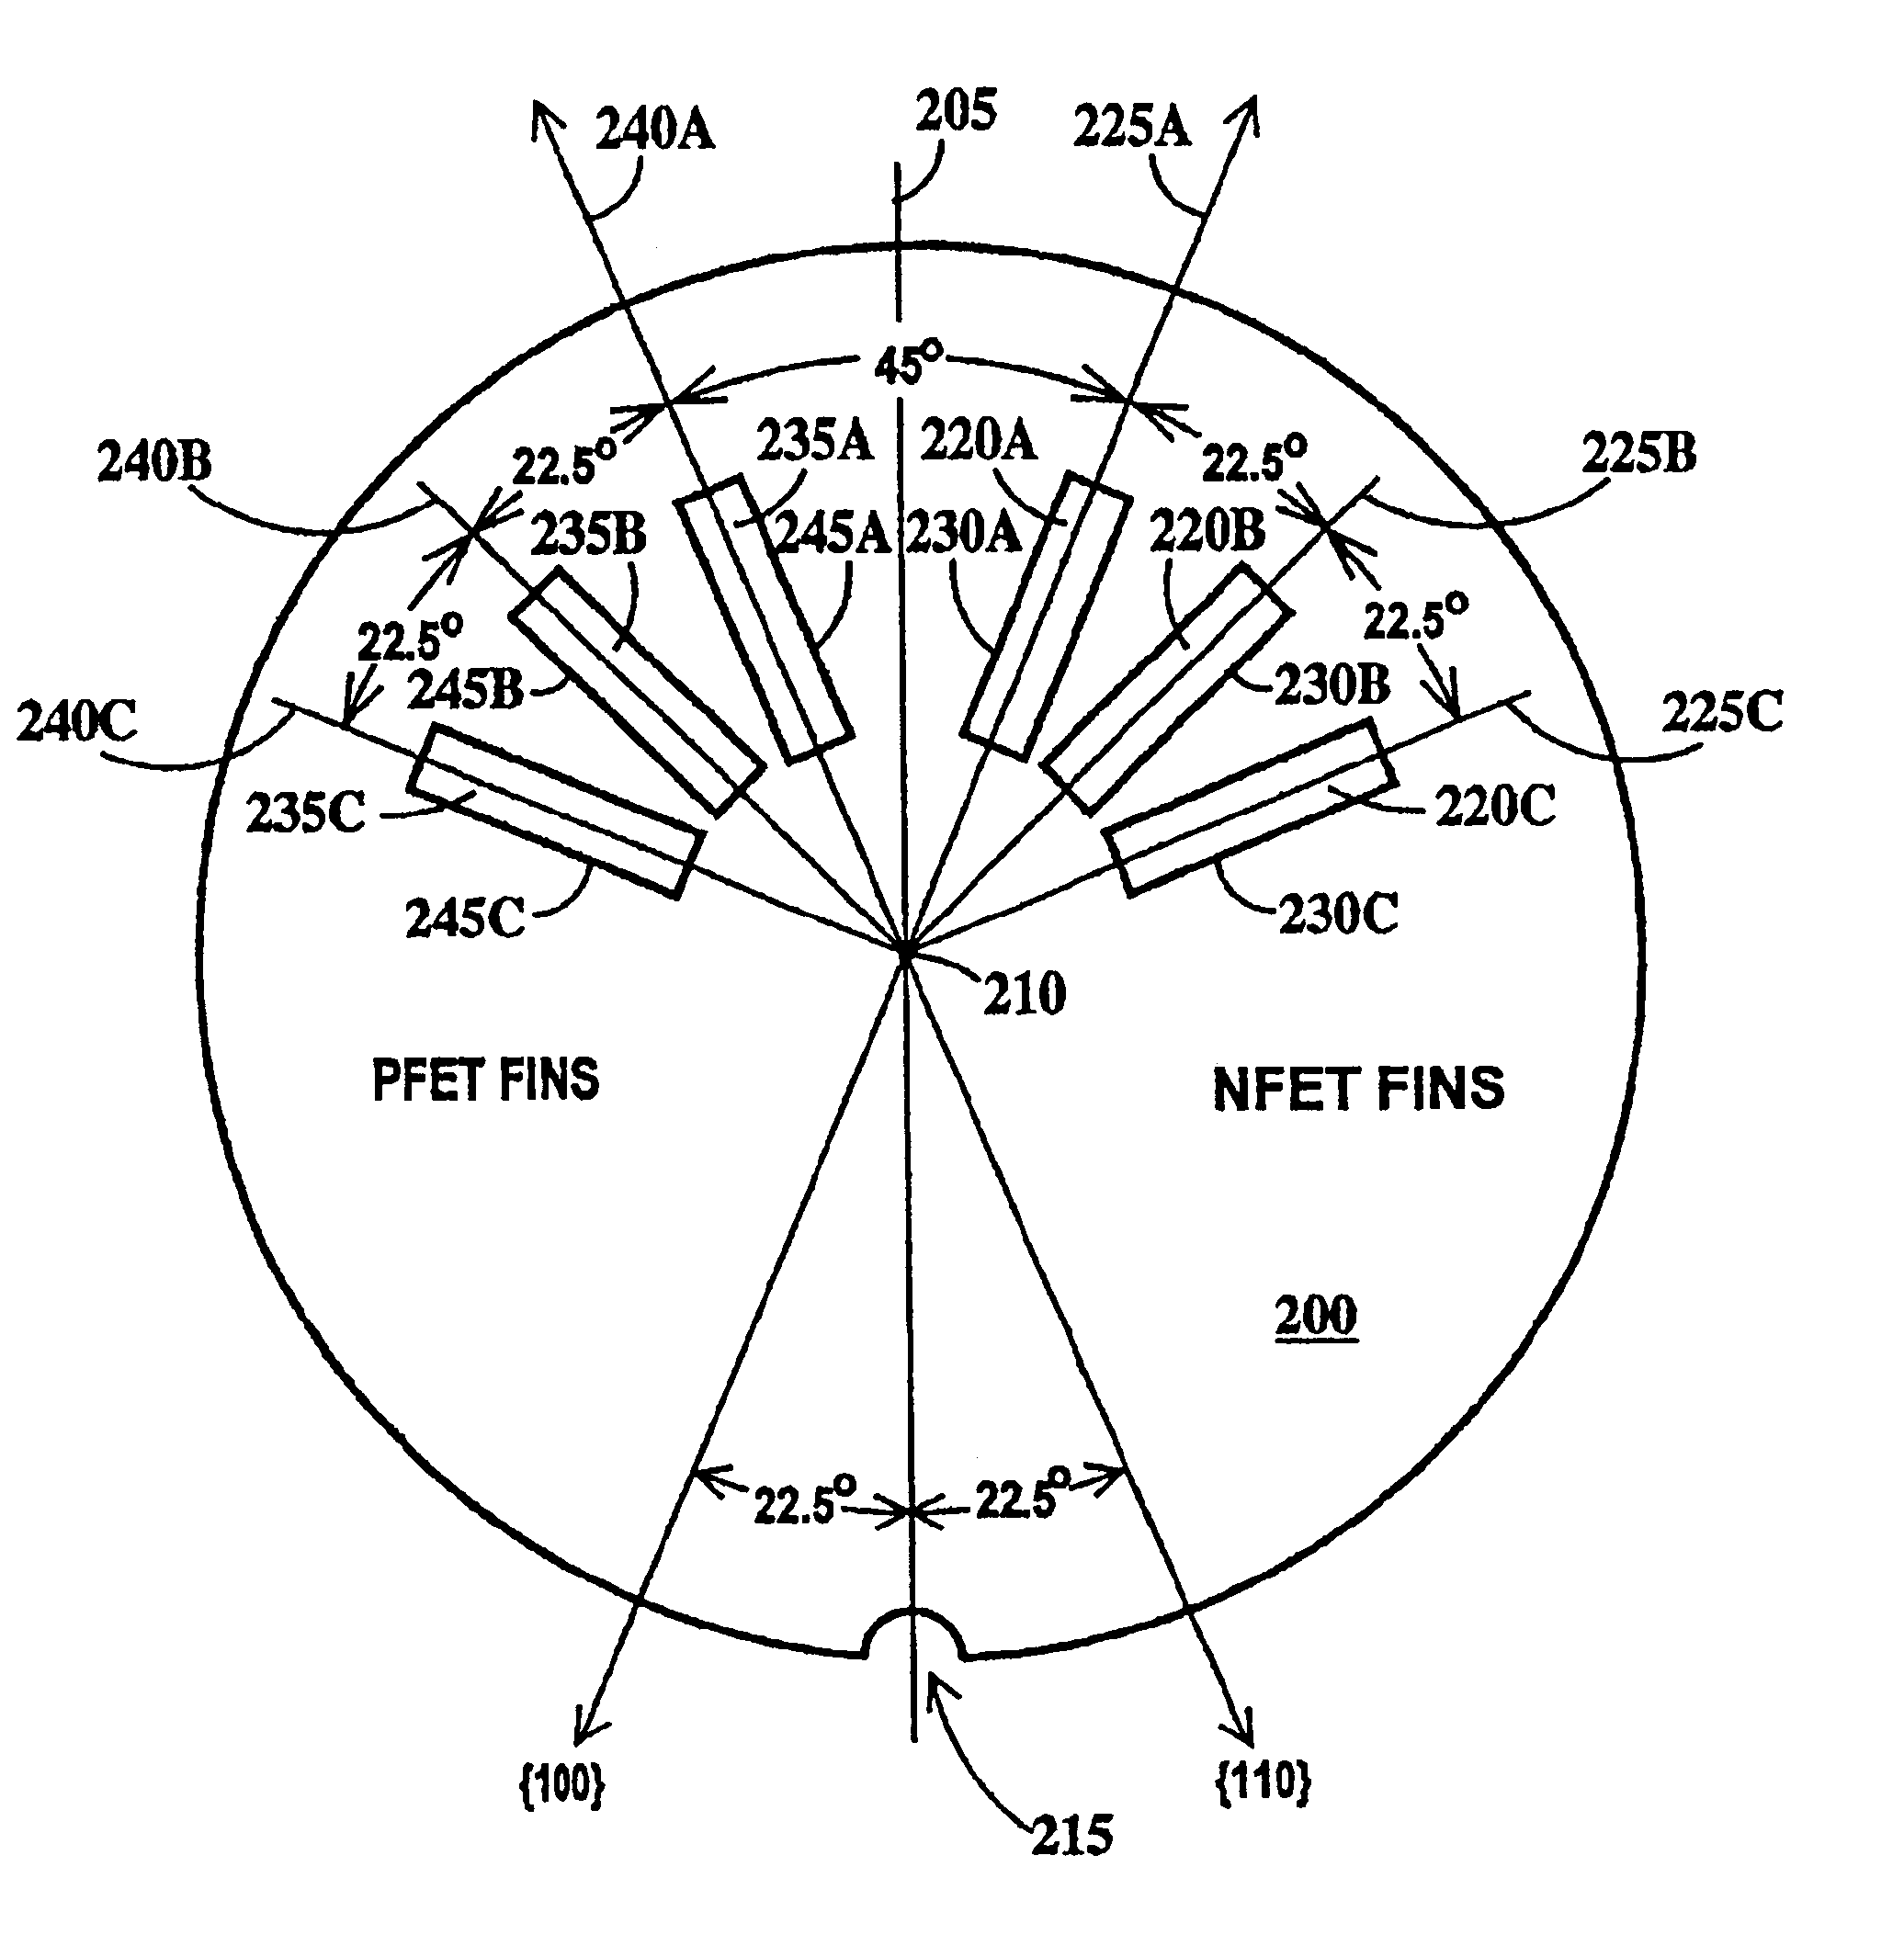 FinFET SRAM cell with chevron FinFET logic